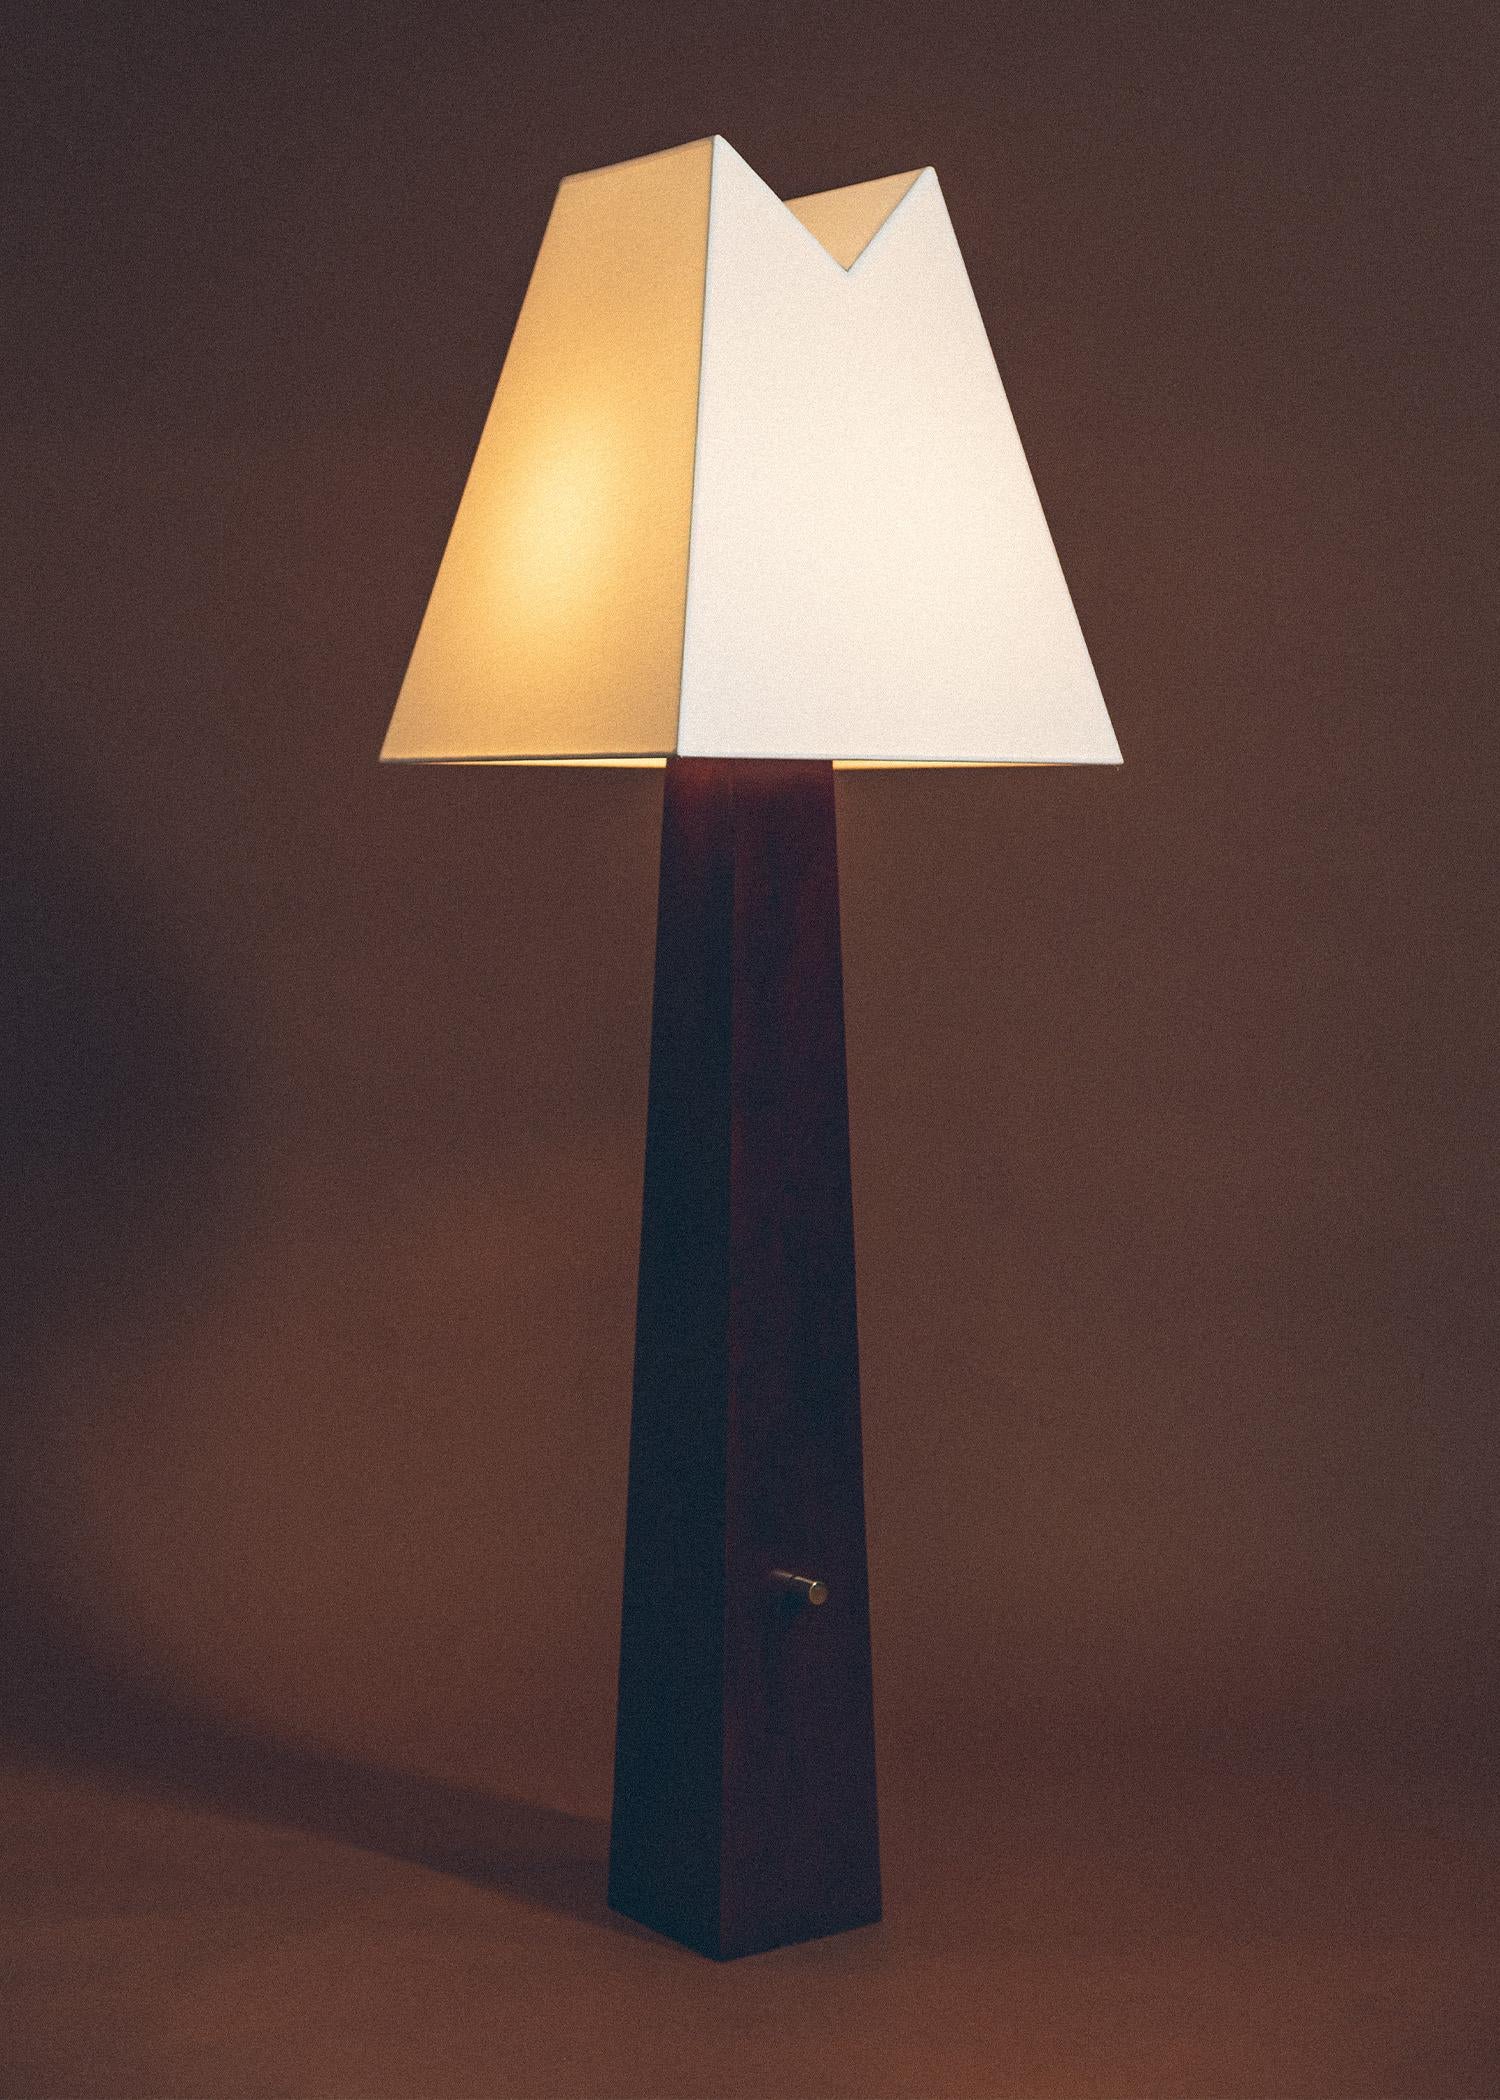 Die aus der Nostalgie geborene Alpenlampe erinnert an natürliche Formen und Gebirgskonturen. Der natürliche Holzsockel basiert auf erdigen Materialien, die an die Höhenlage der Wälder Utahs erinnern; das V